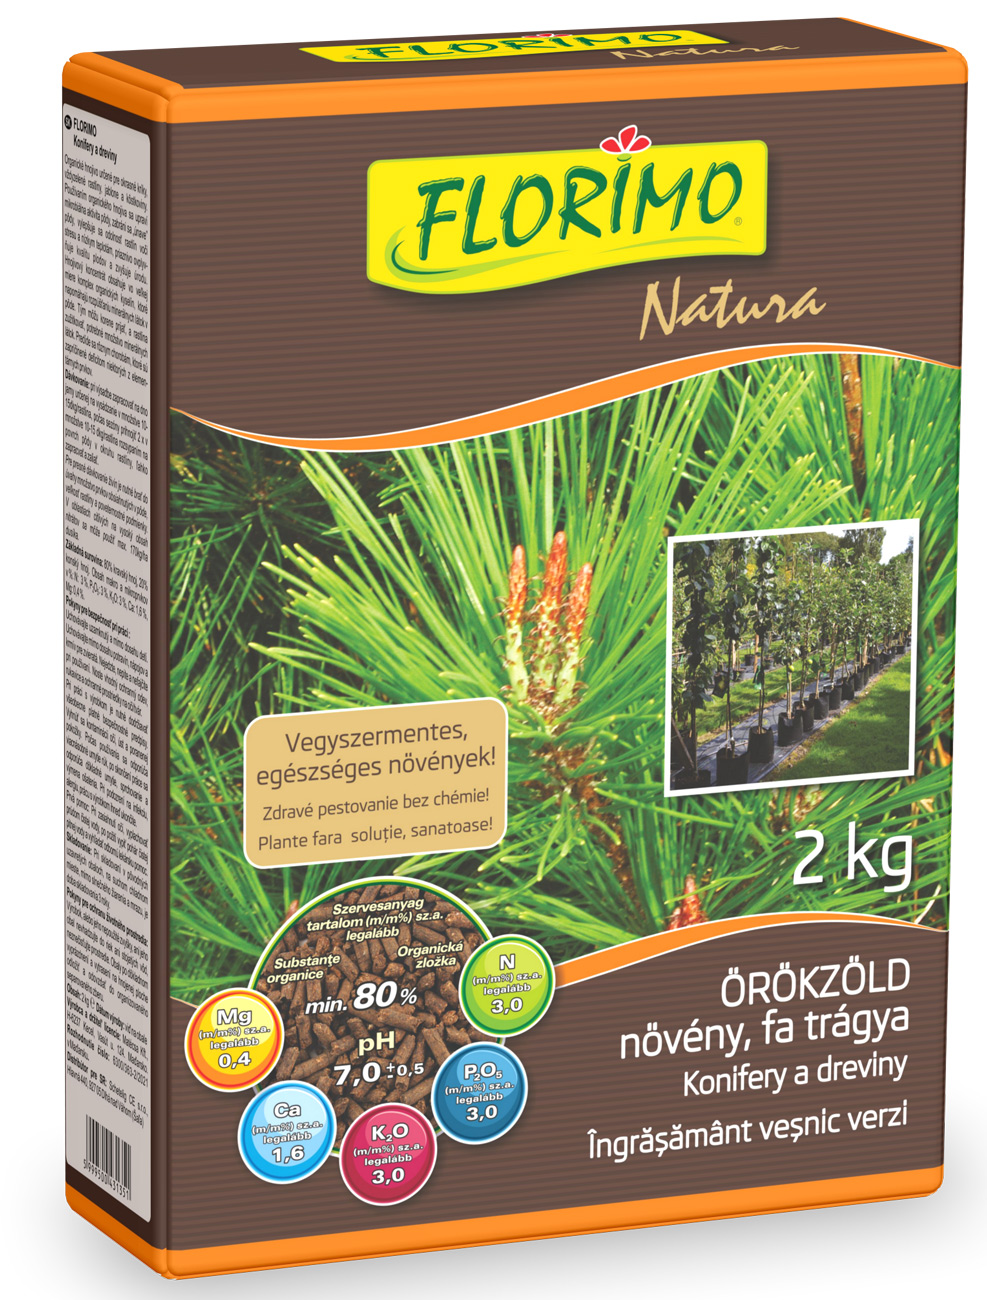 Florimo® Natura Örökzöld növény, cserje fa trágya 2 kg